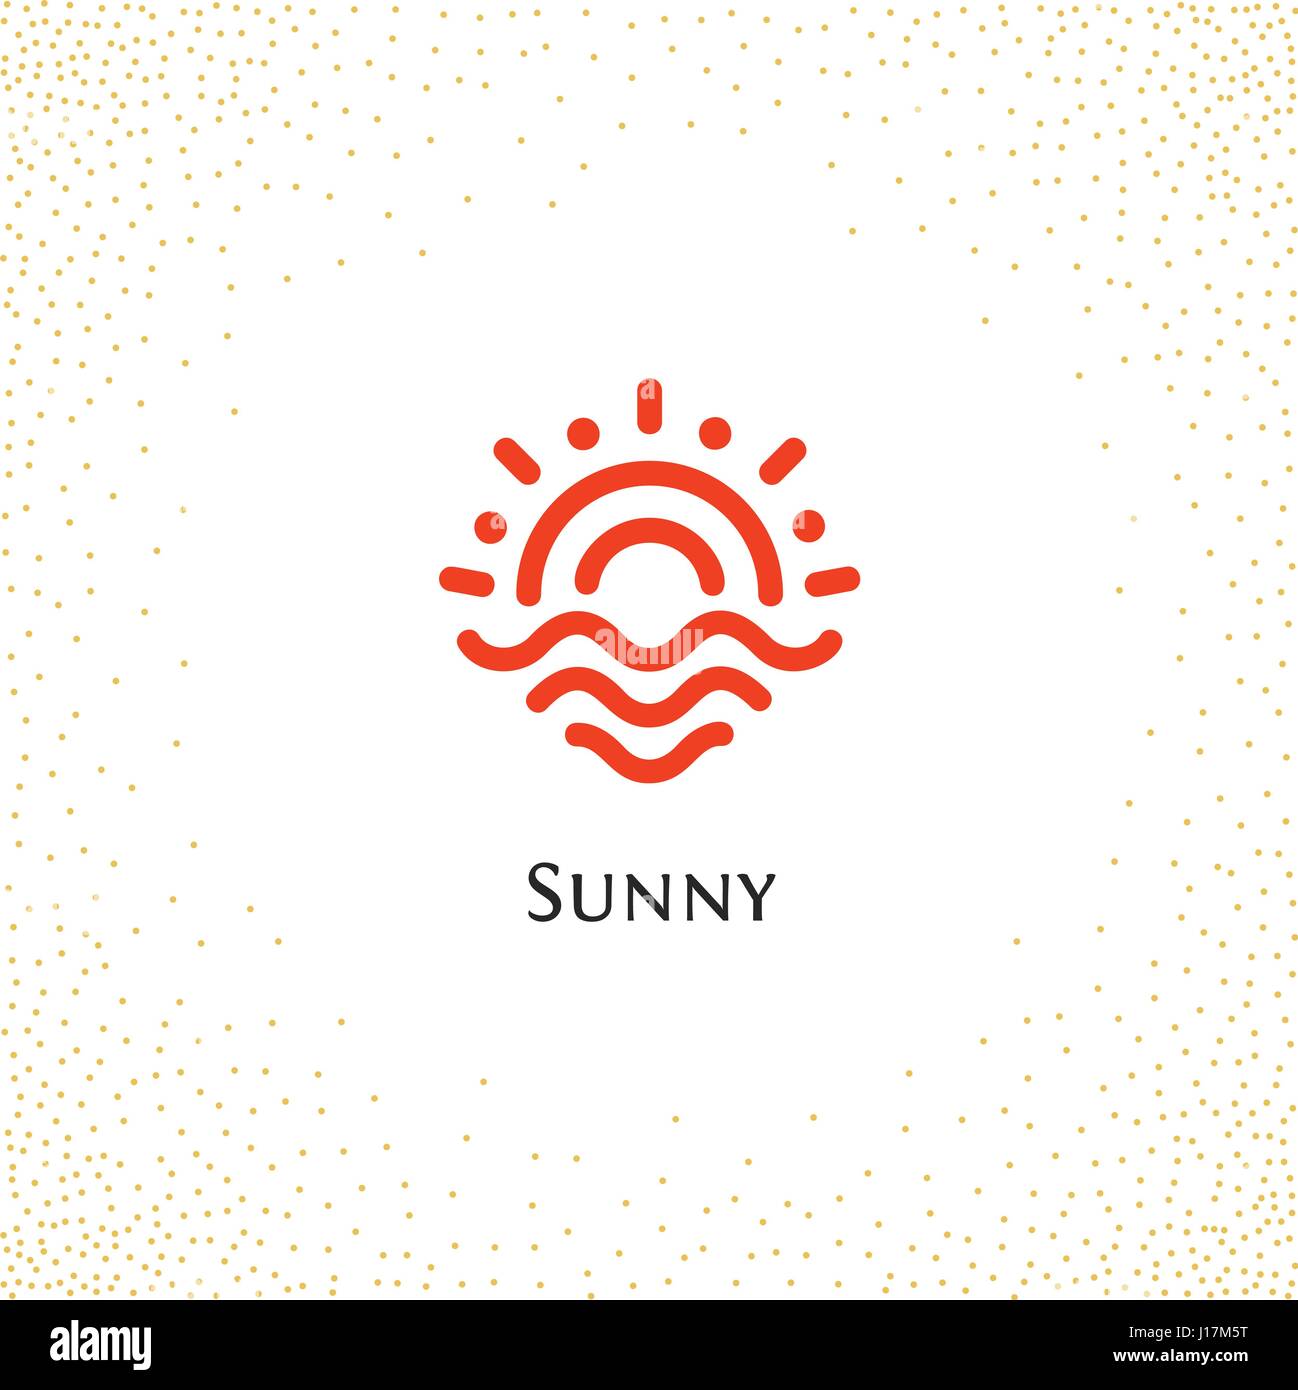 Isolierte abstrakt Runde Form Farbe orange Logo, Sonne Schriftzug Vektor-Illustration auf einem Hintergrund von Punkten. Stock Vektor